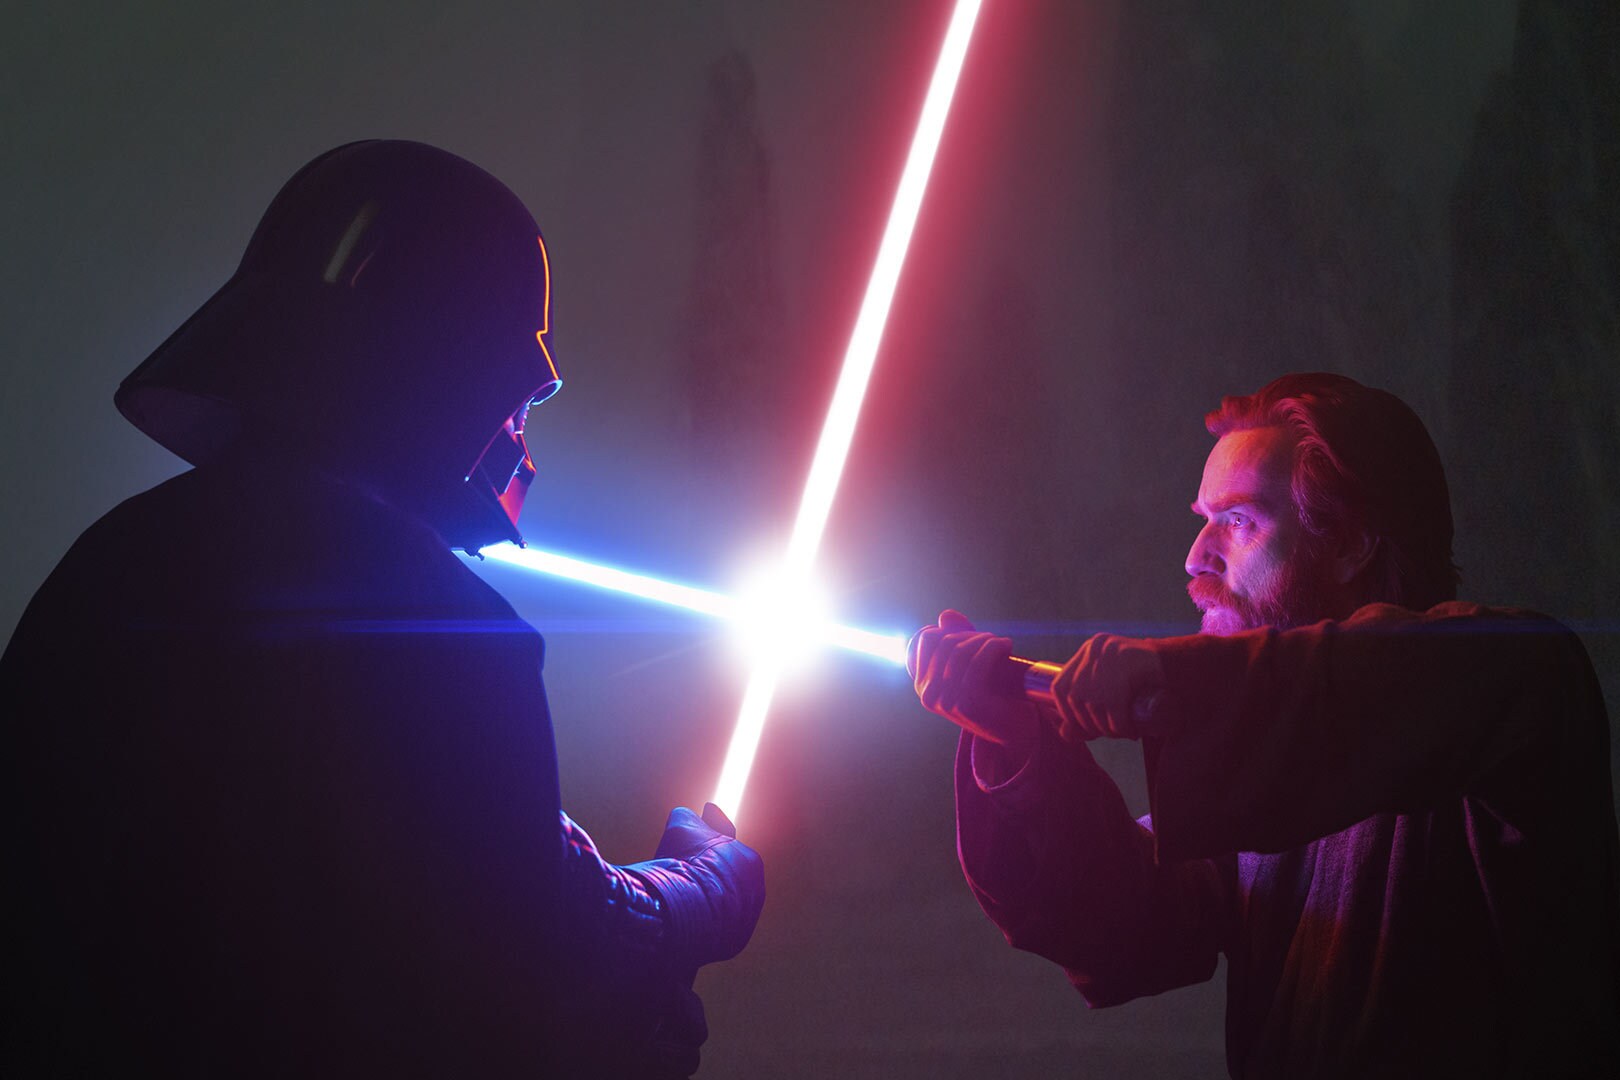 Darth Vader and Obi-Wan dueling